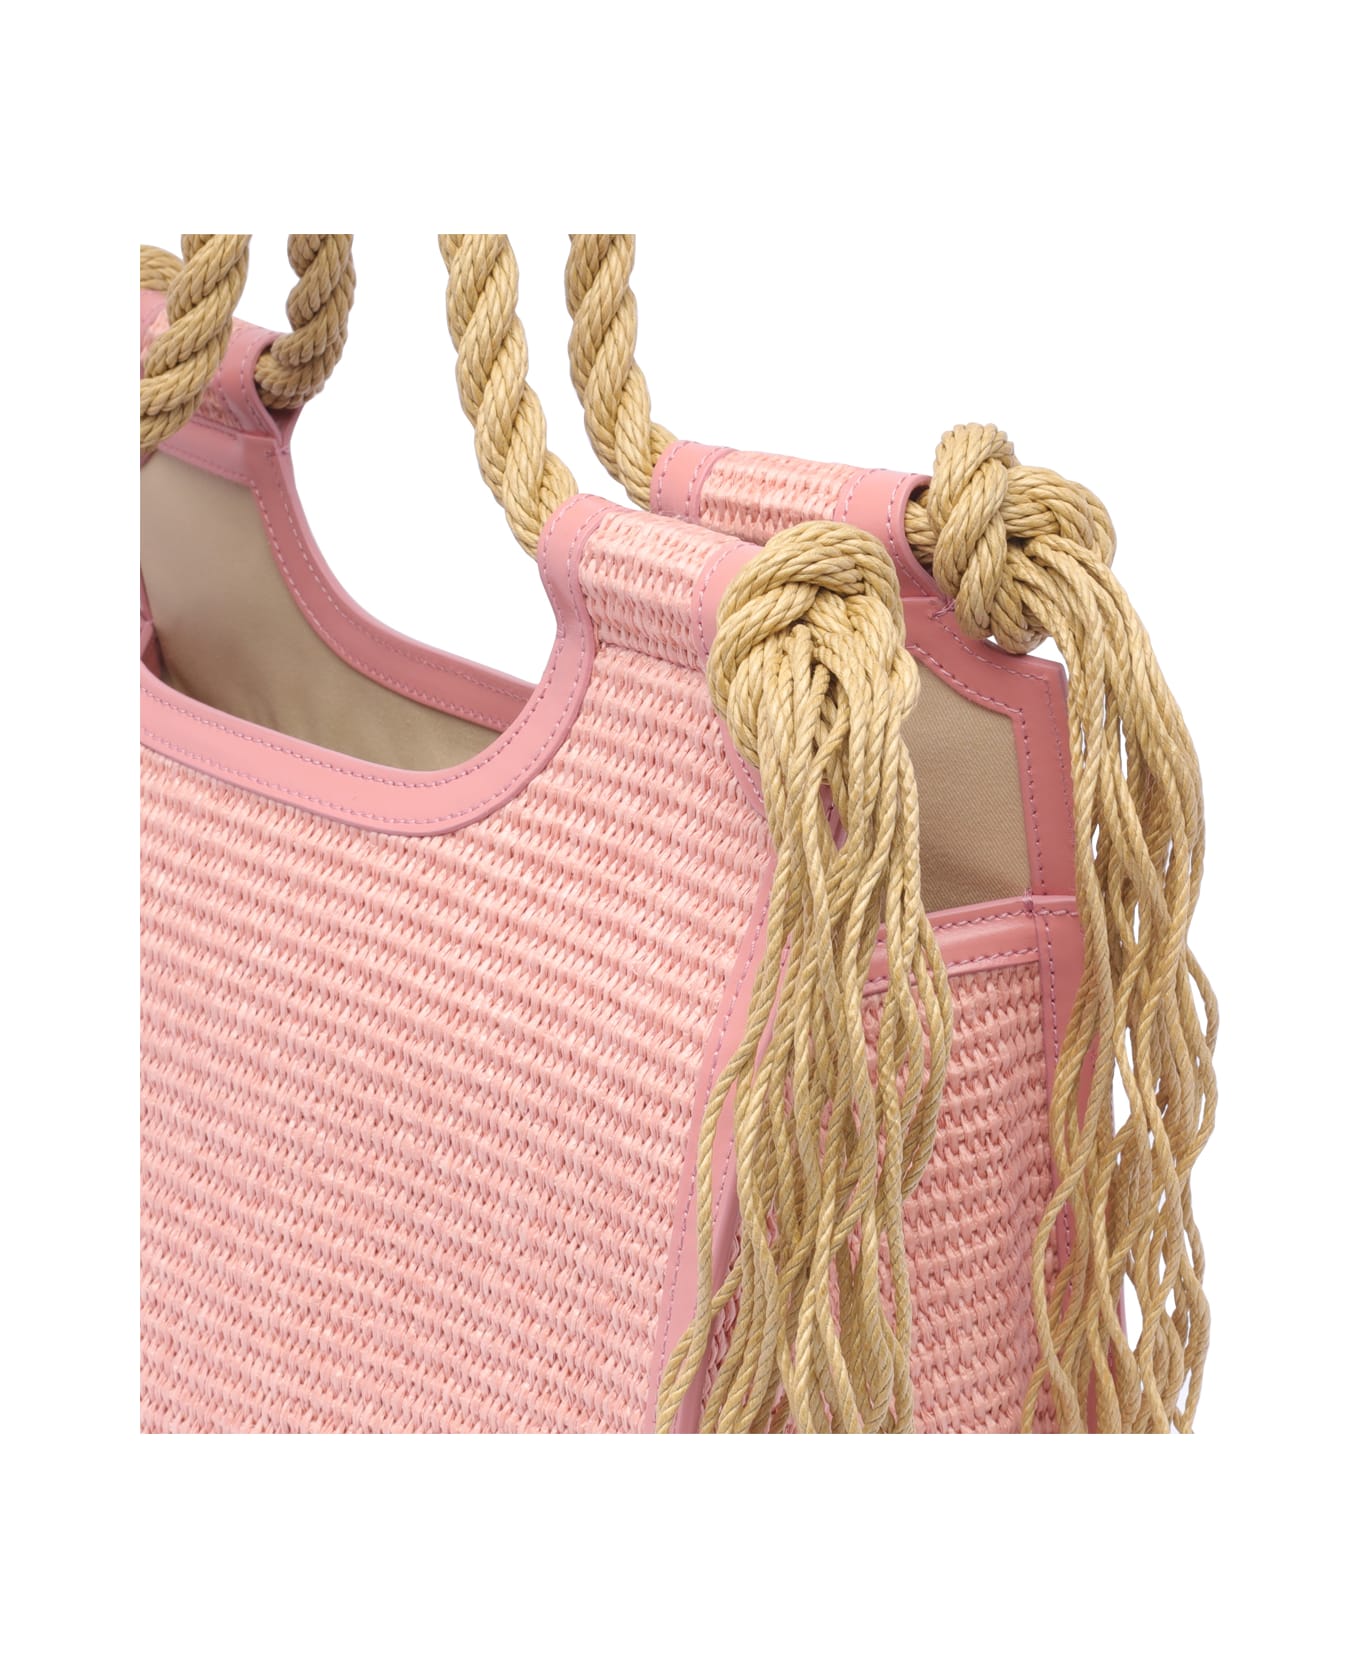 Marni Marcel Summer Bag Rope Handles - Pink トートバッグ